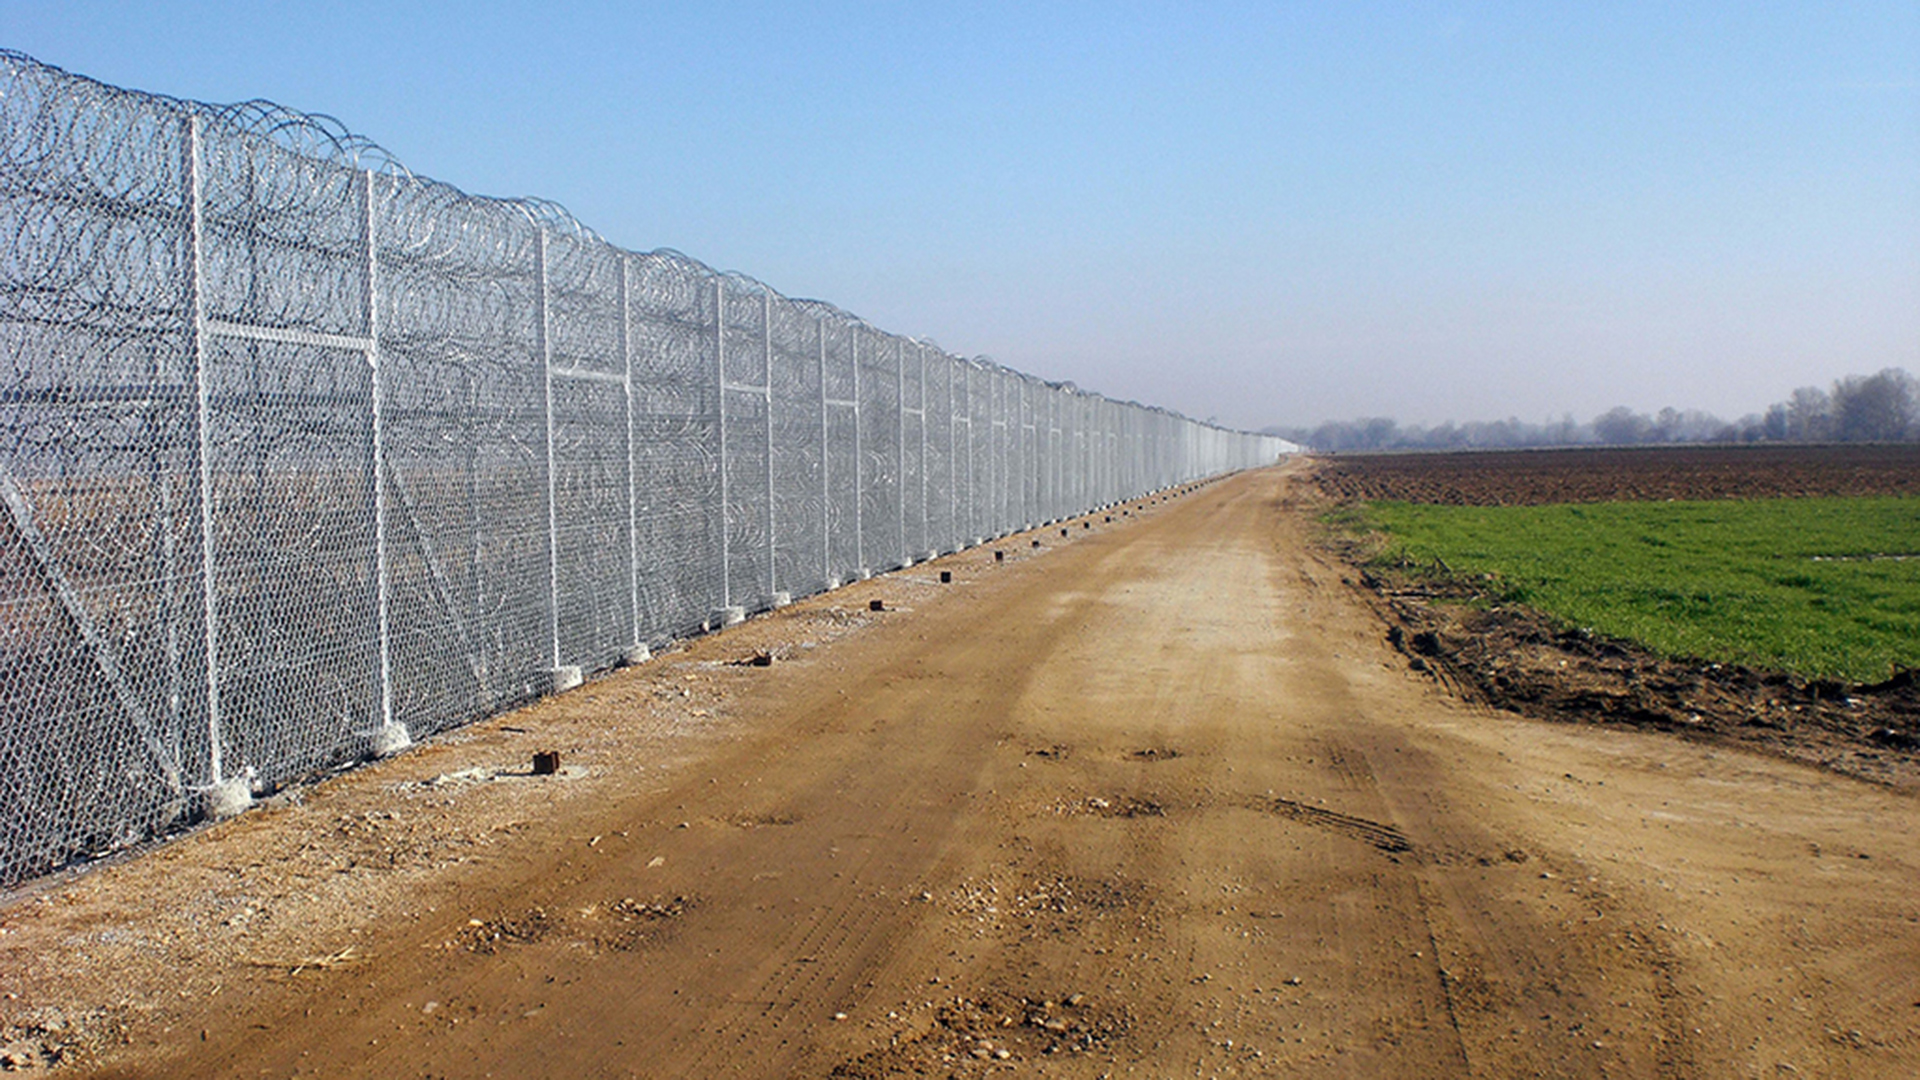 Grenzzaun zwischen Griechenland und der Türkei in der Region Evros. (Archivbild: Dezember 2012) | picture alliance / dpa